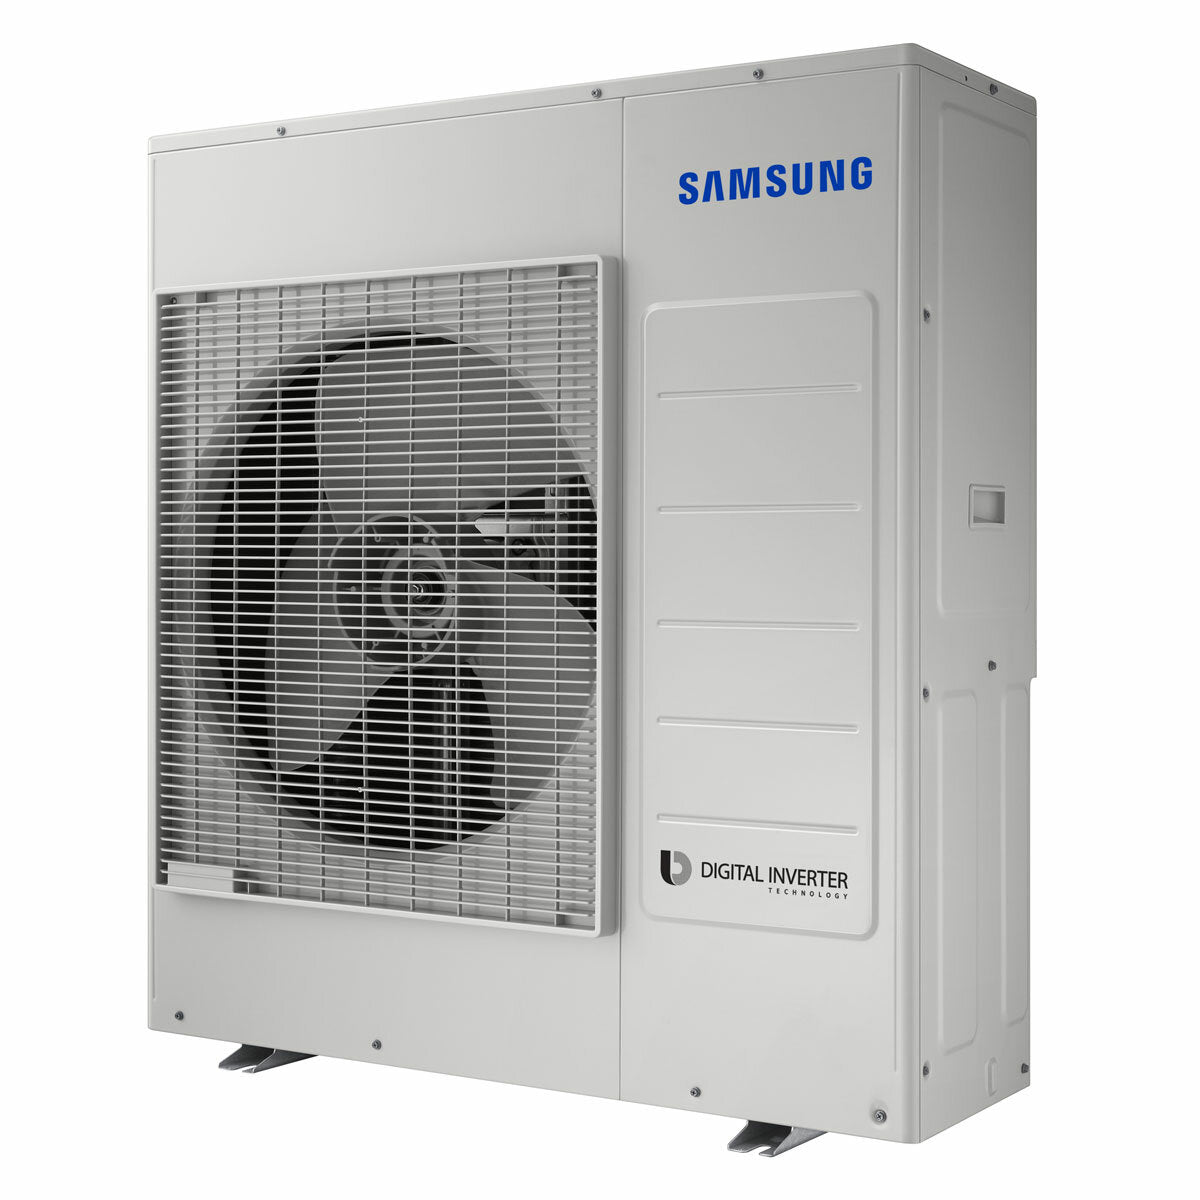 Samsung Air Conditioner WindFree Cassette 1 Way penta split 9000 + 9000 + 9000 + 9000 + 12000 BTU inverter A ++ outdoor unit 10.0 kW